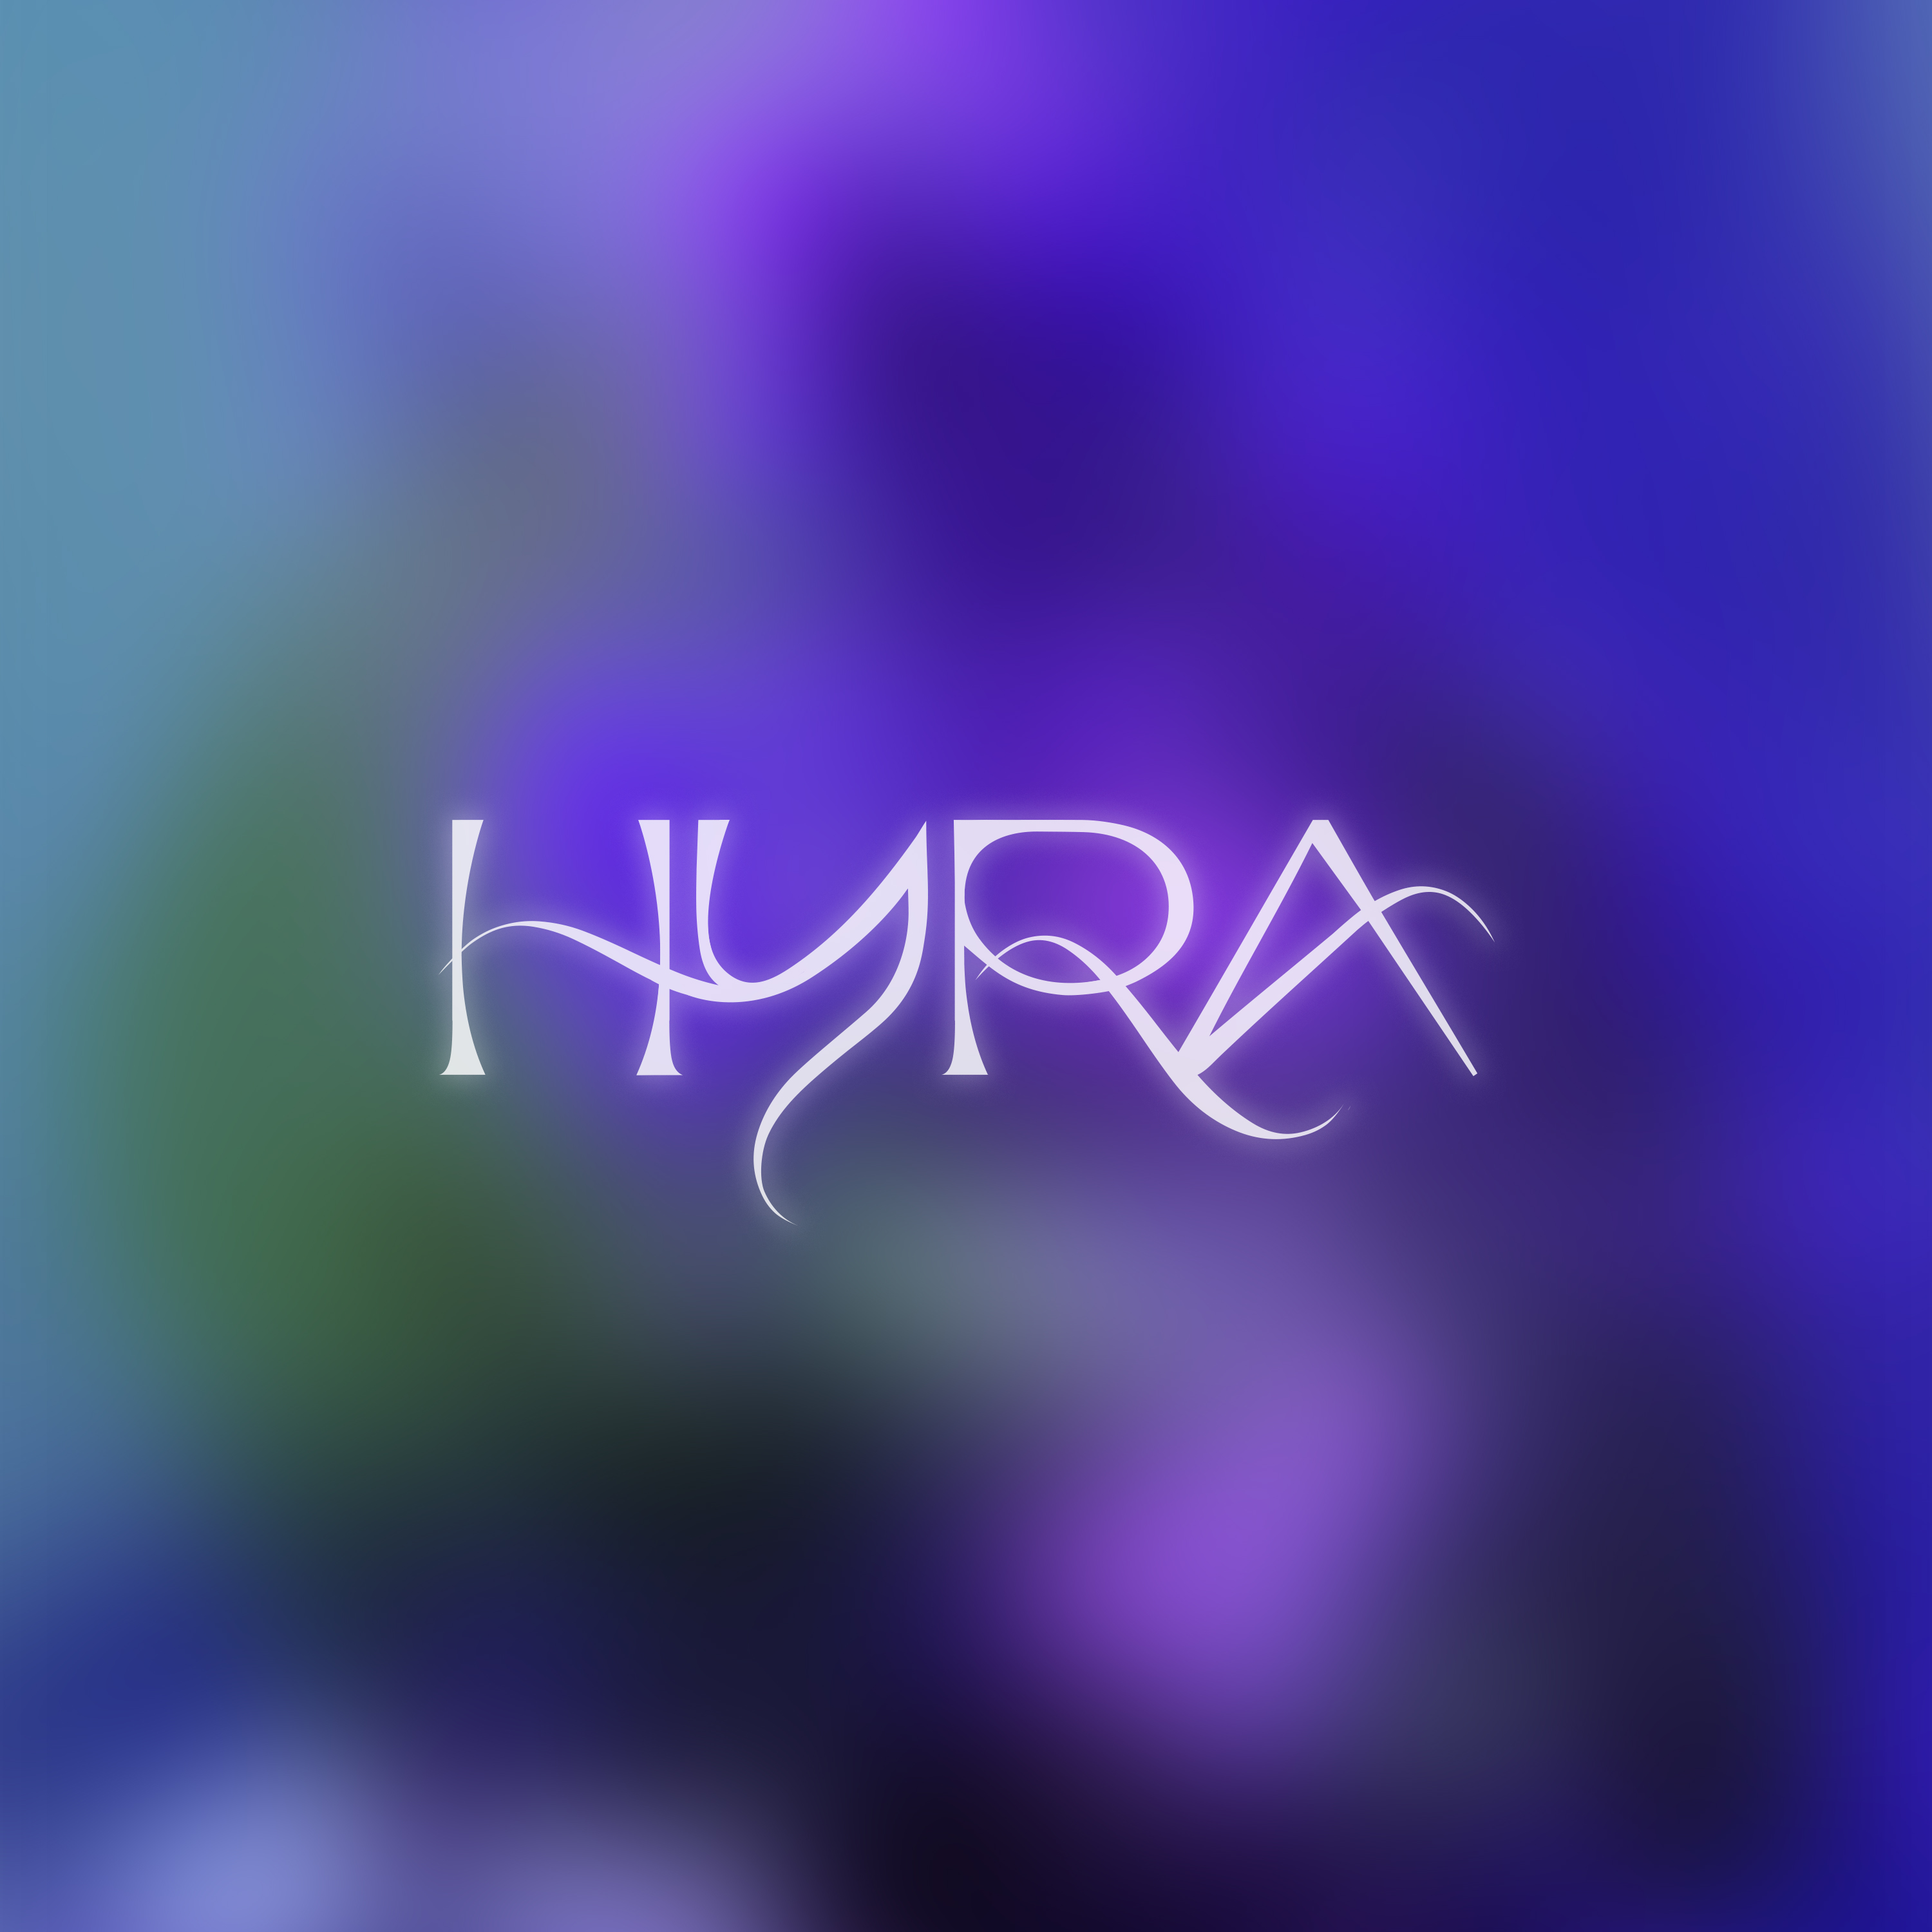 Cover concept "HYRA"